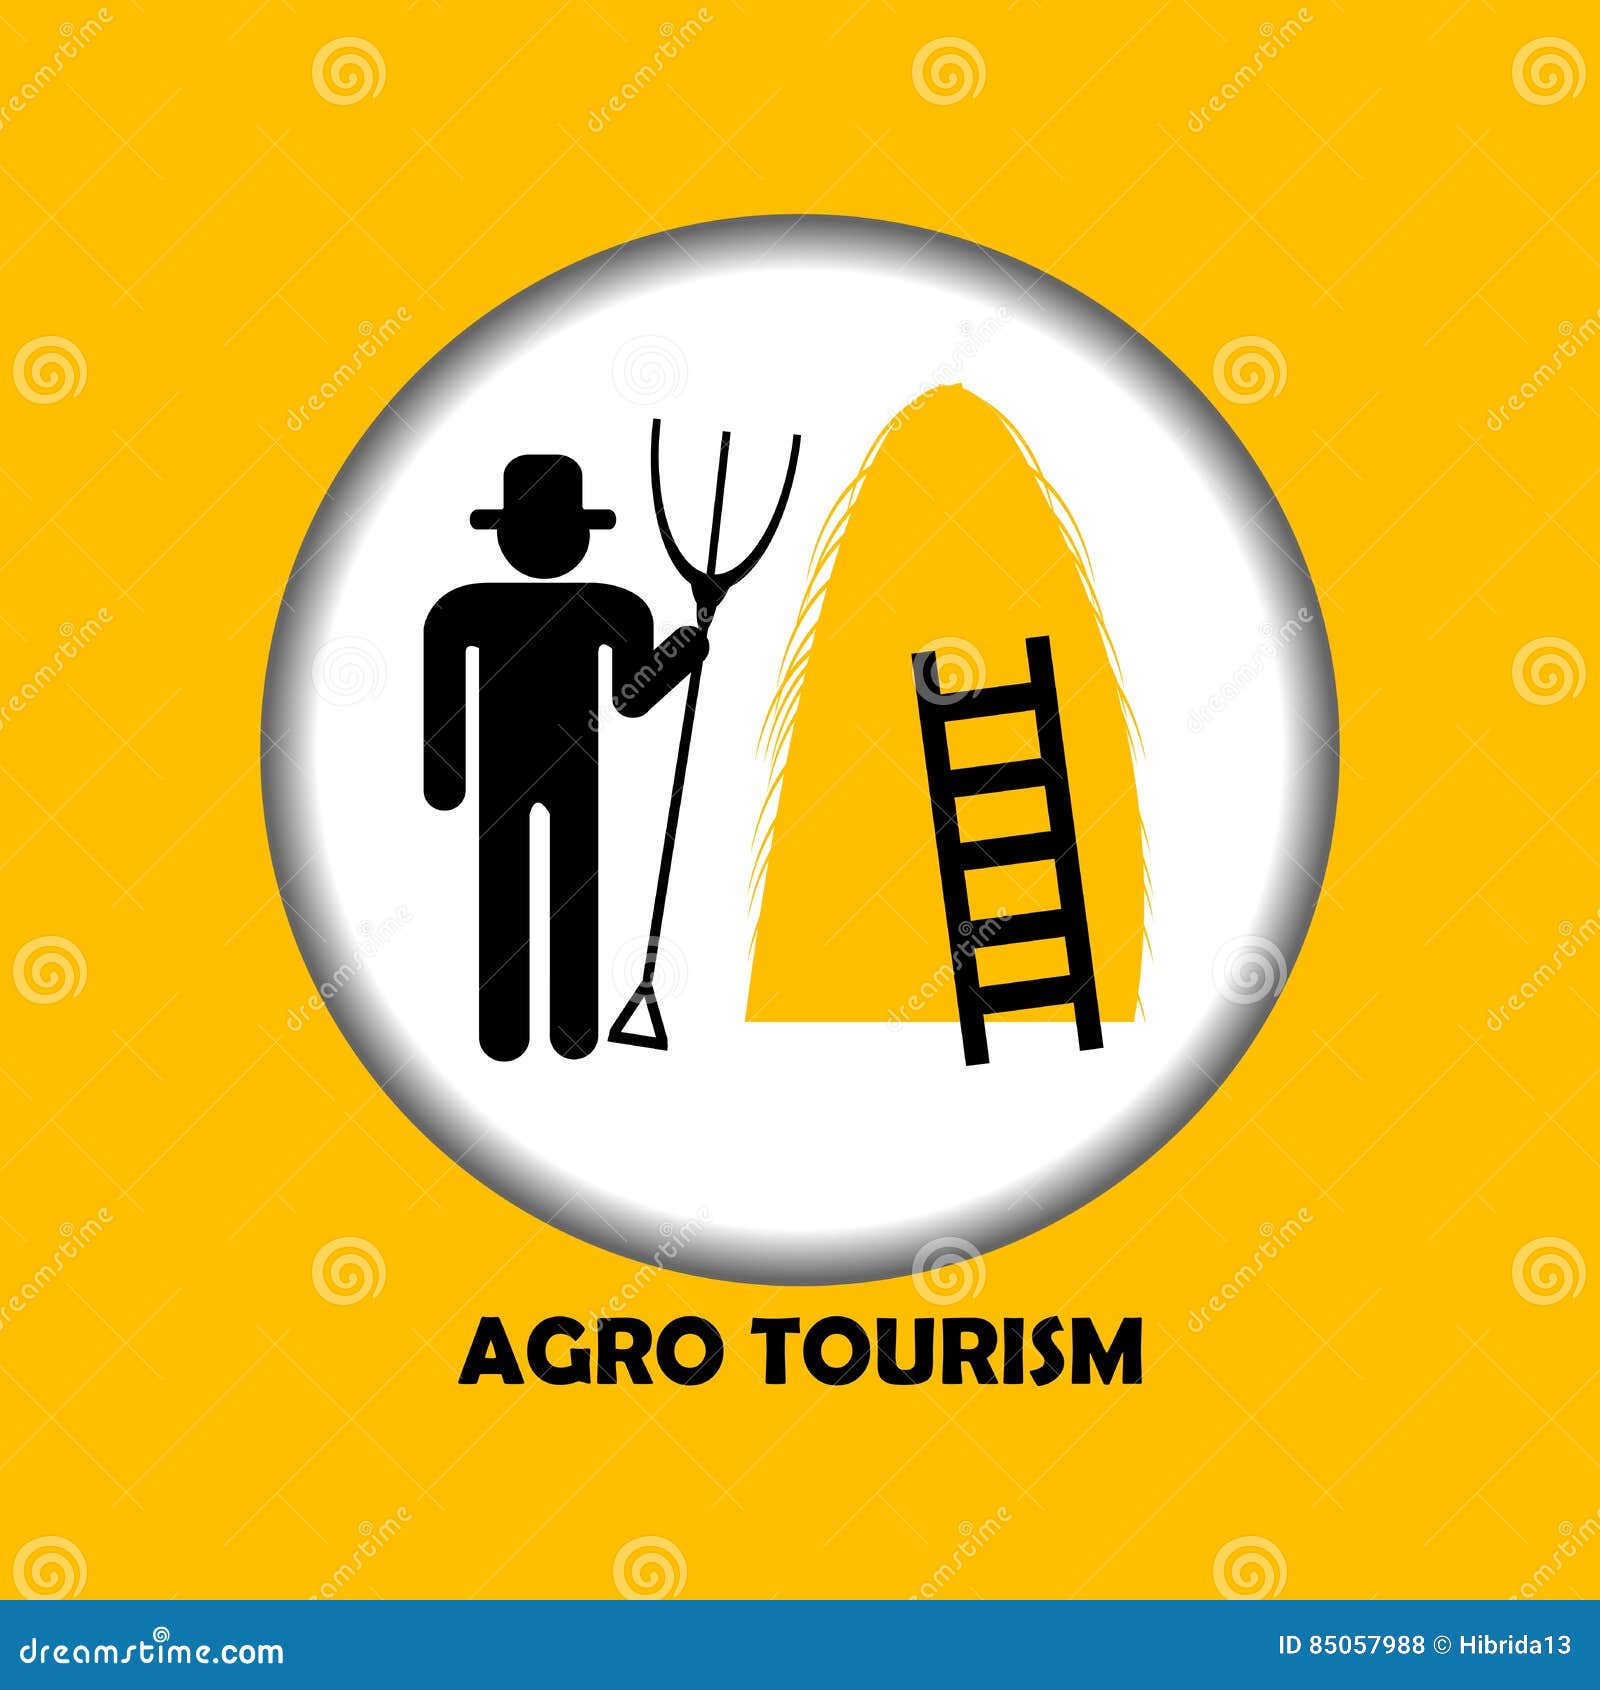 agro tourism icon